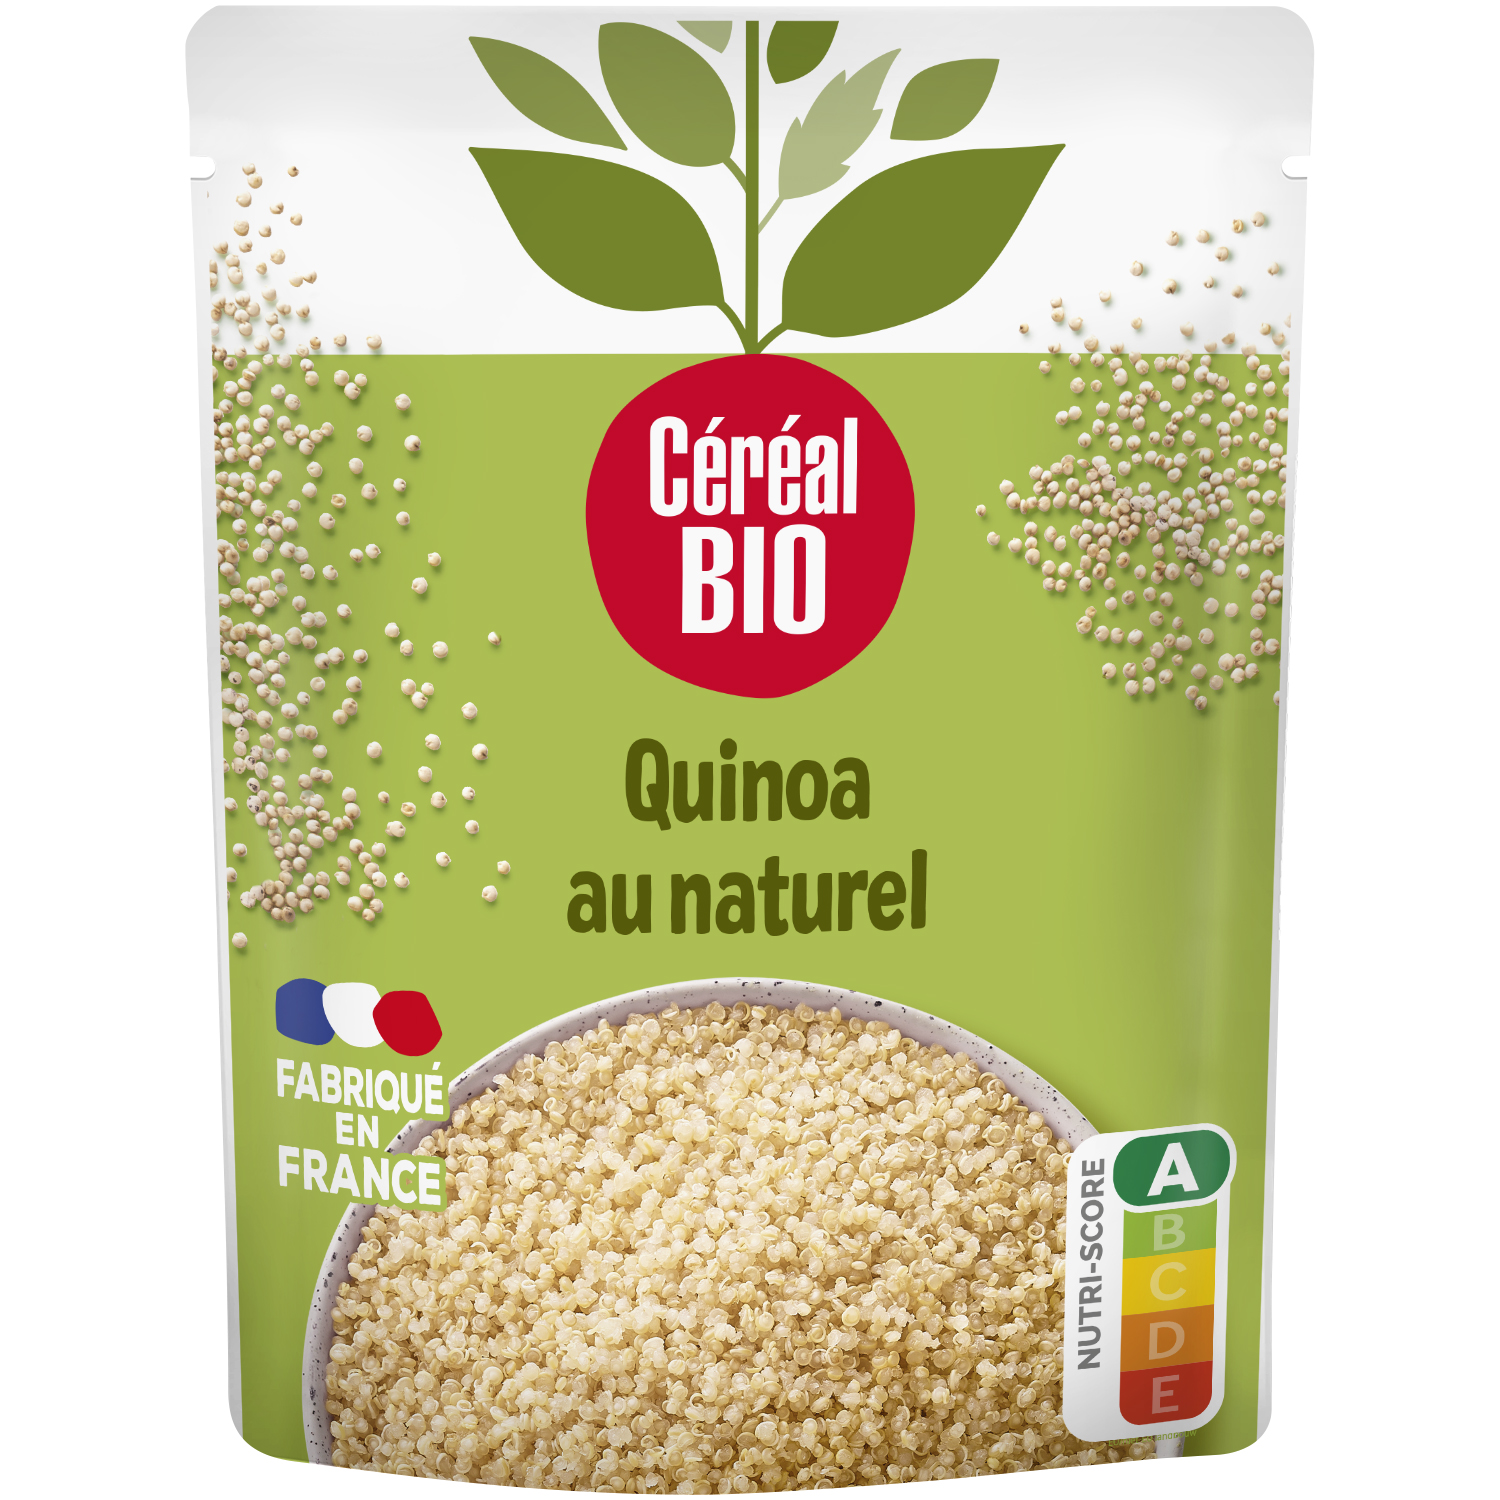 CÉRÉAL BIO Quinoa au naturel sachet express 1 personne 220g pas cher 